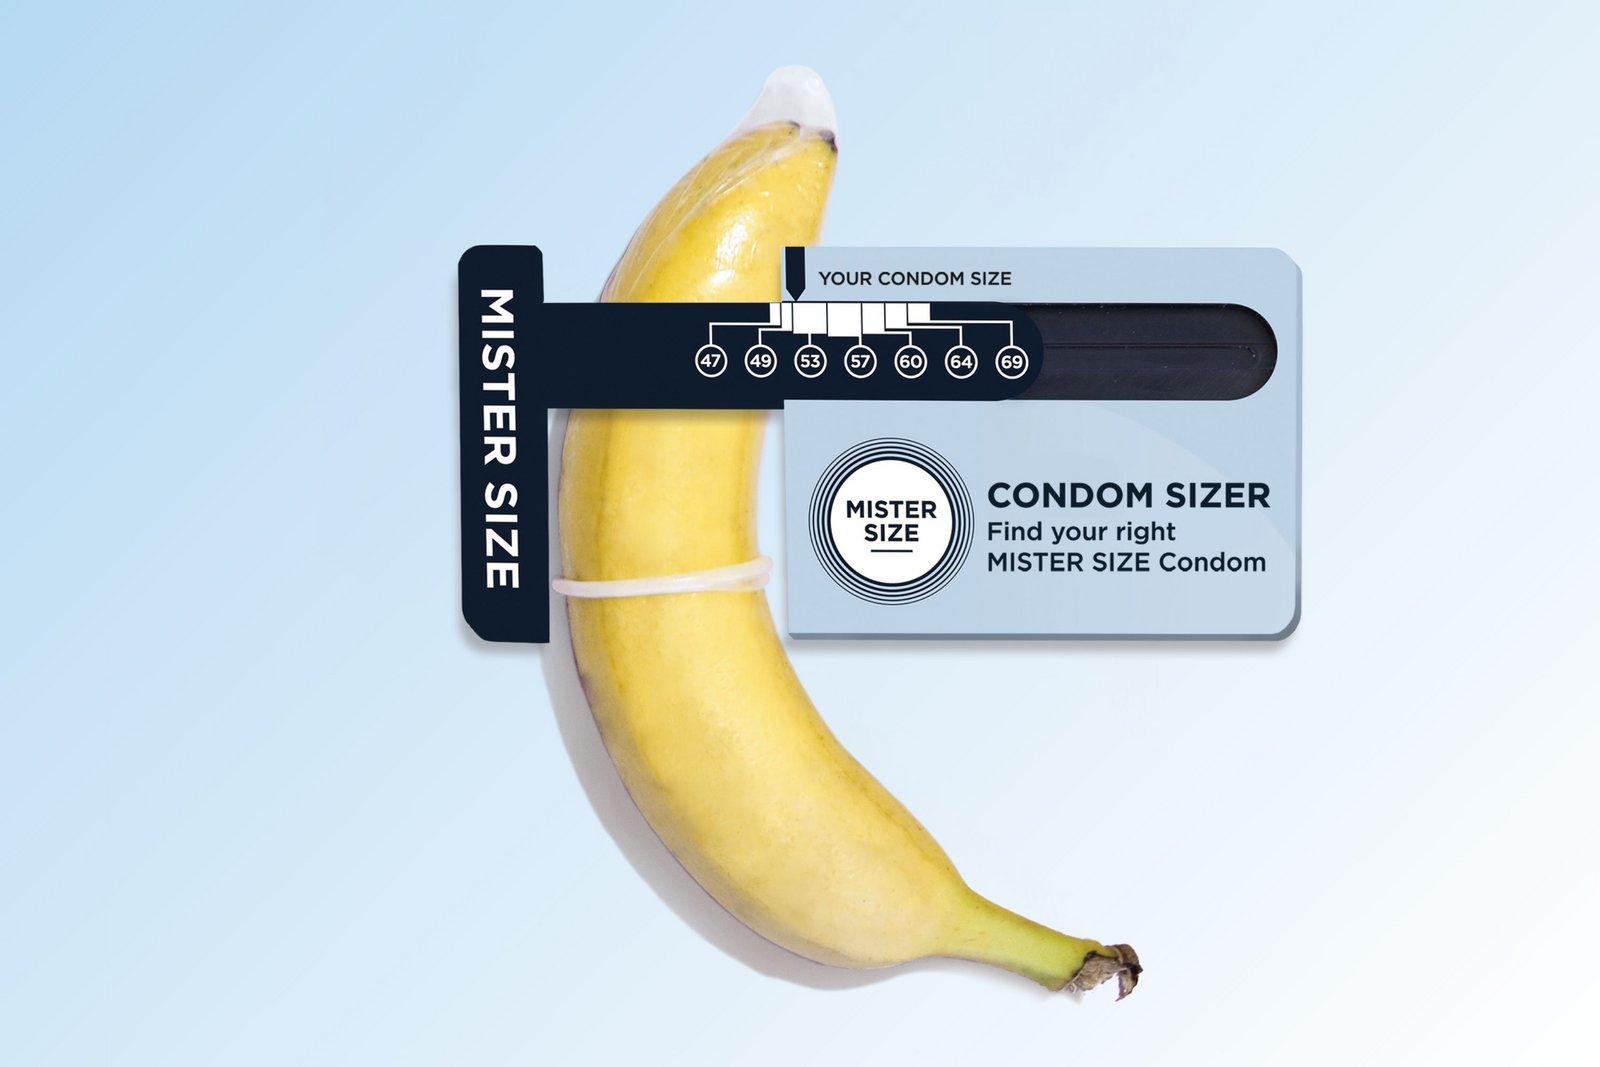 Prezervatyvų matuoklis "Condom Sizer" - matuoklis prezervatyvų dydžiui nustatyti